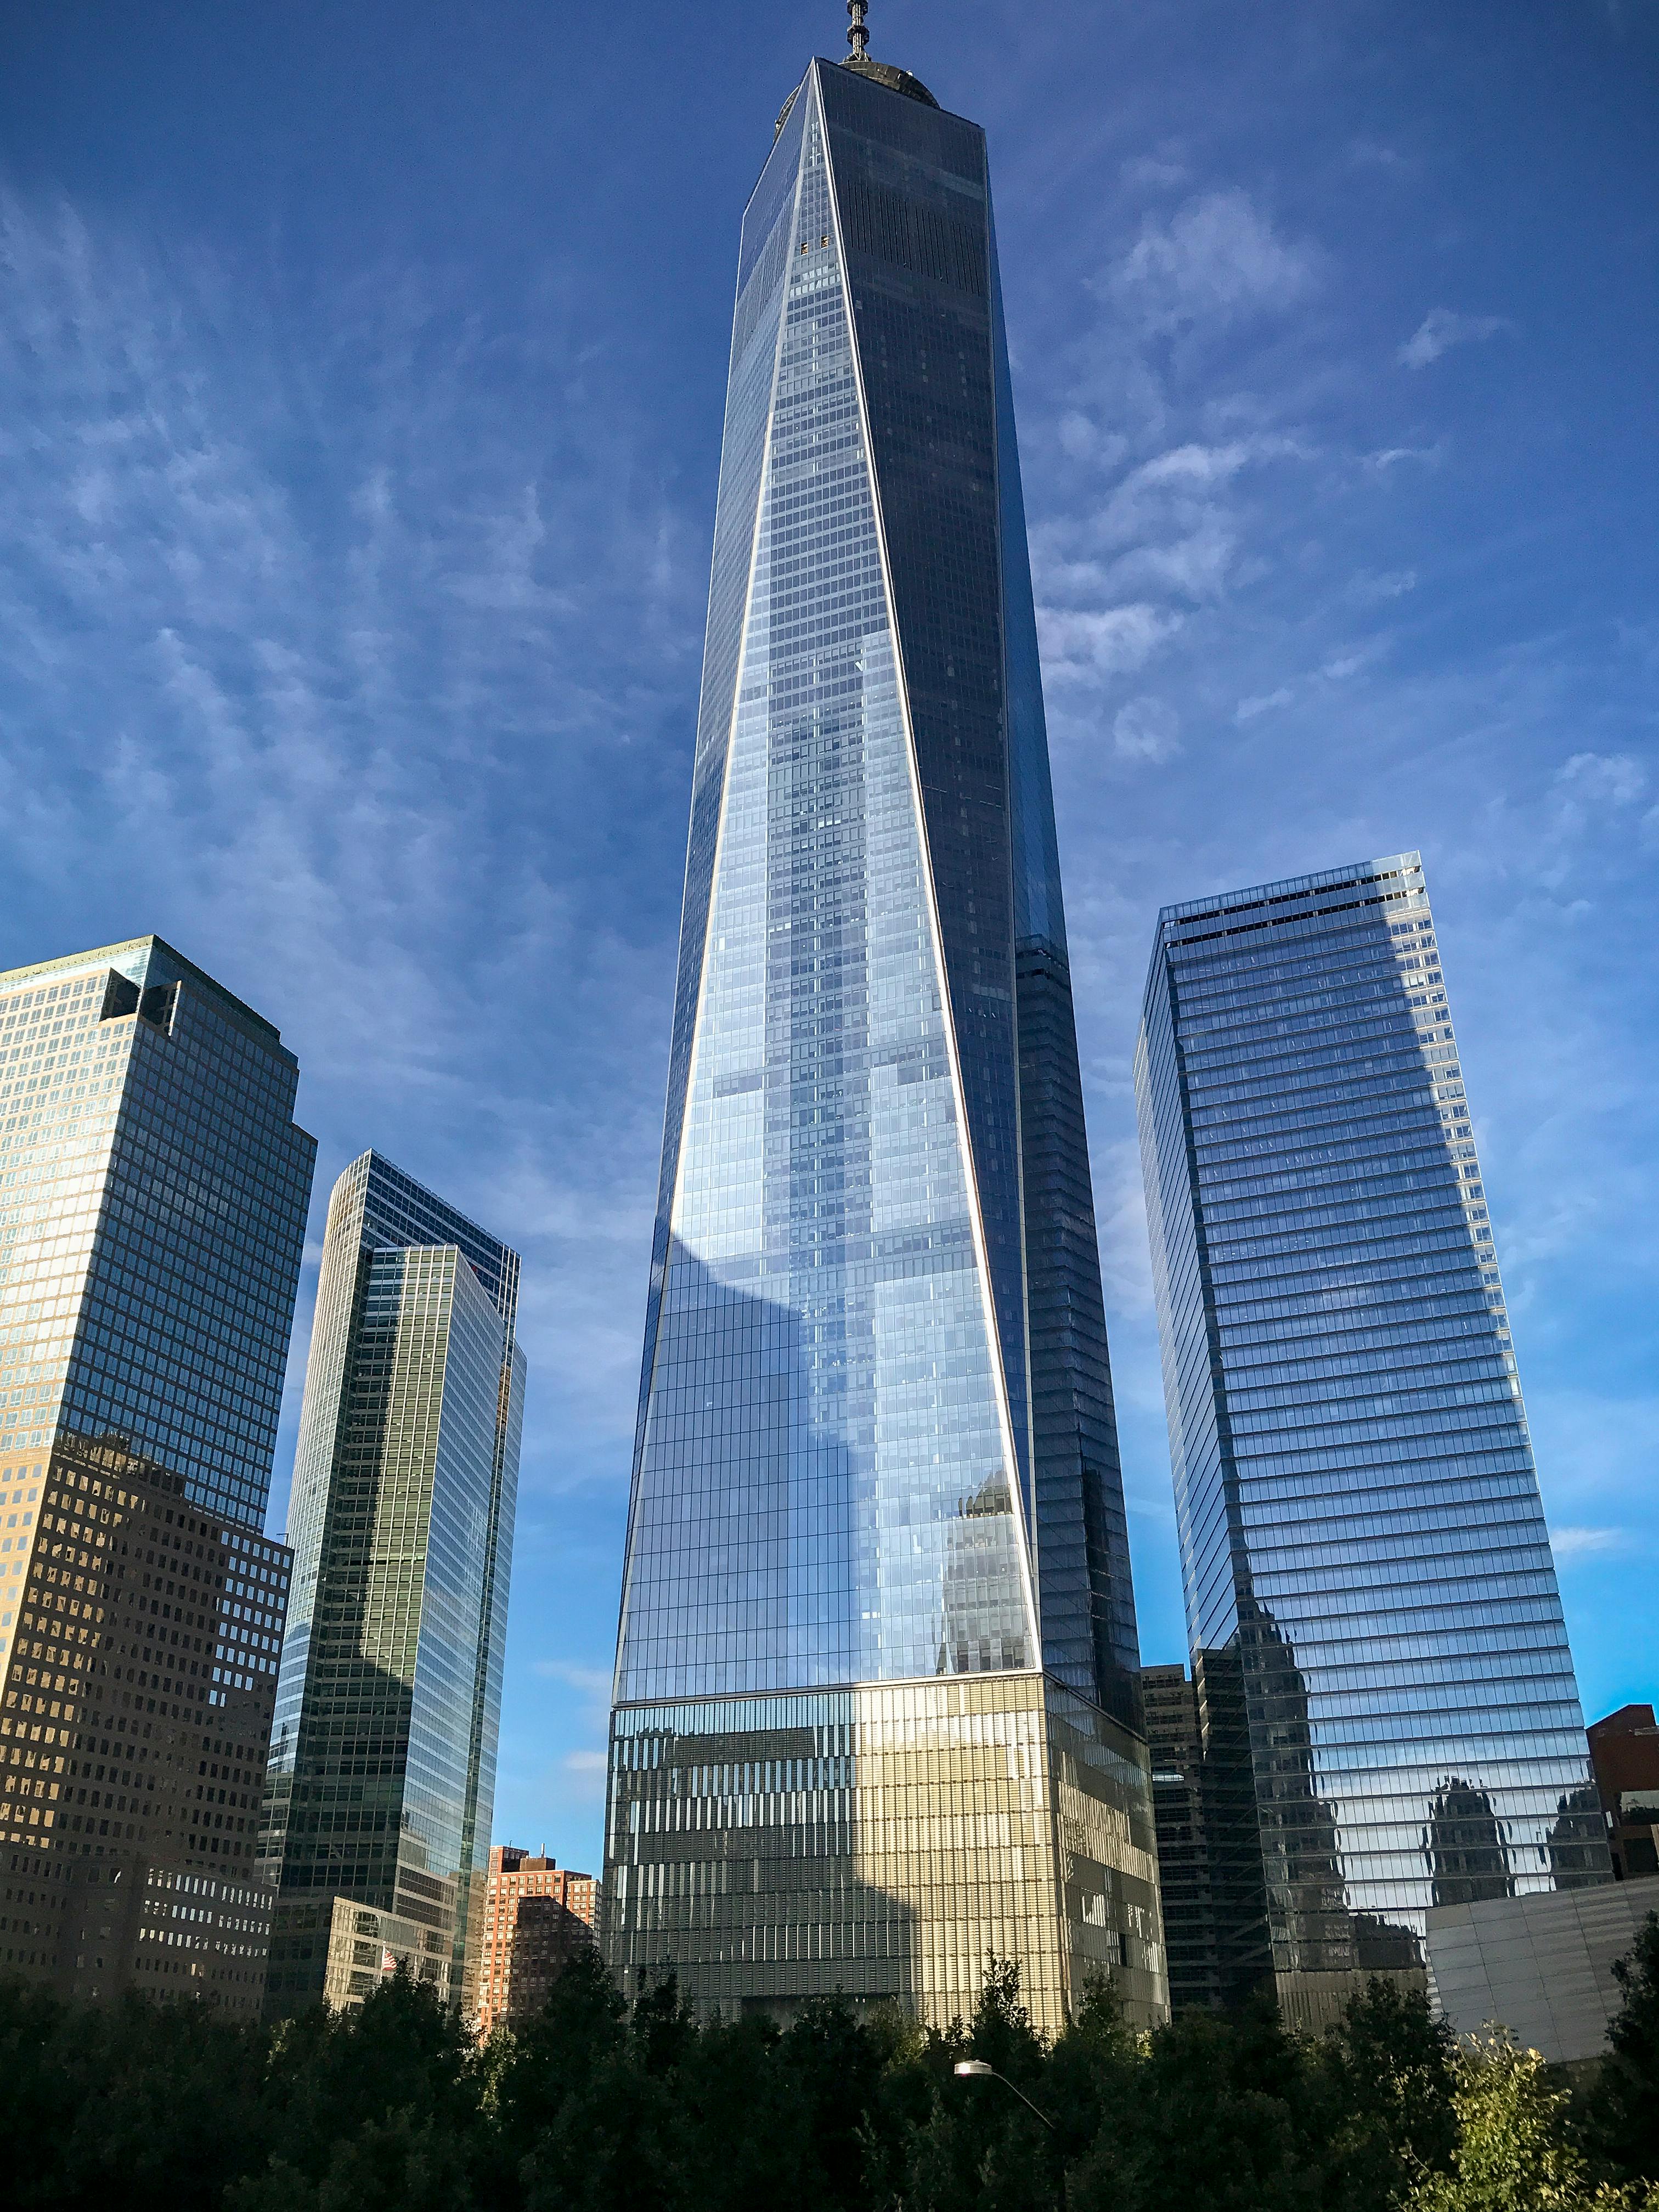 Free stock photo of ground zero, lower manhattan, one world trade center